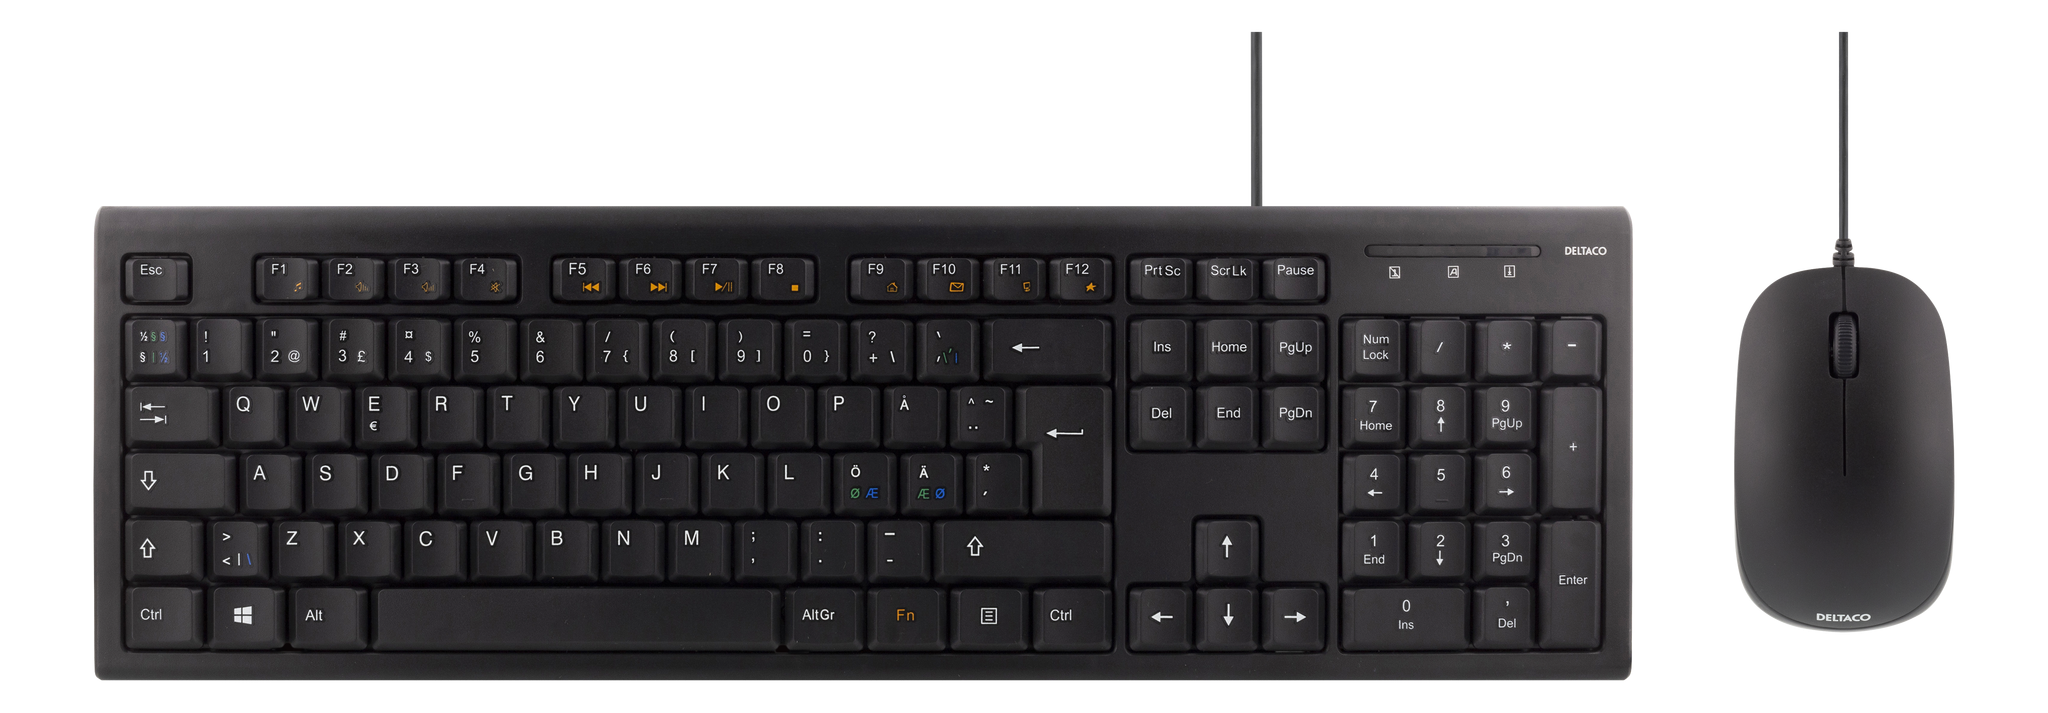 Deltaco Tastatur kit med mus, nordisk layout, USB, svart